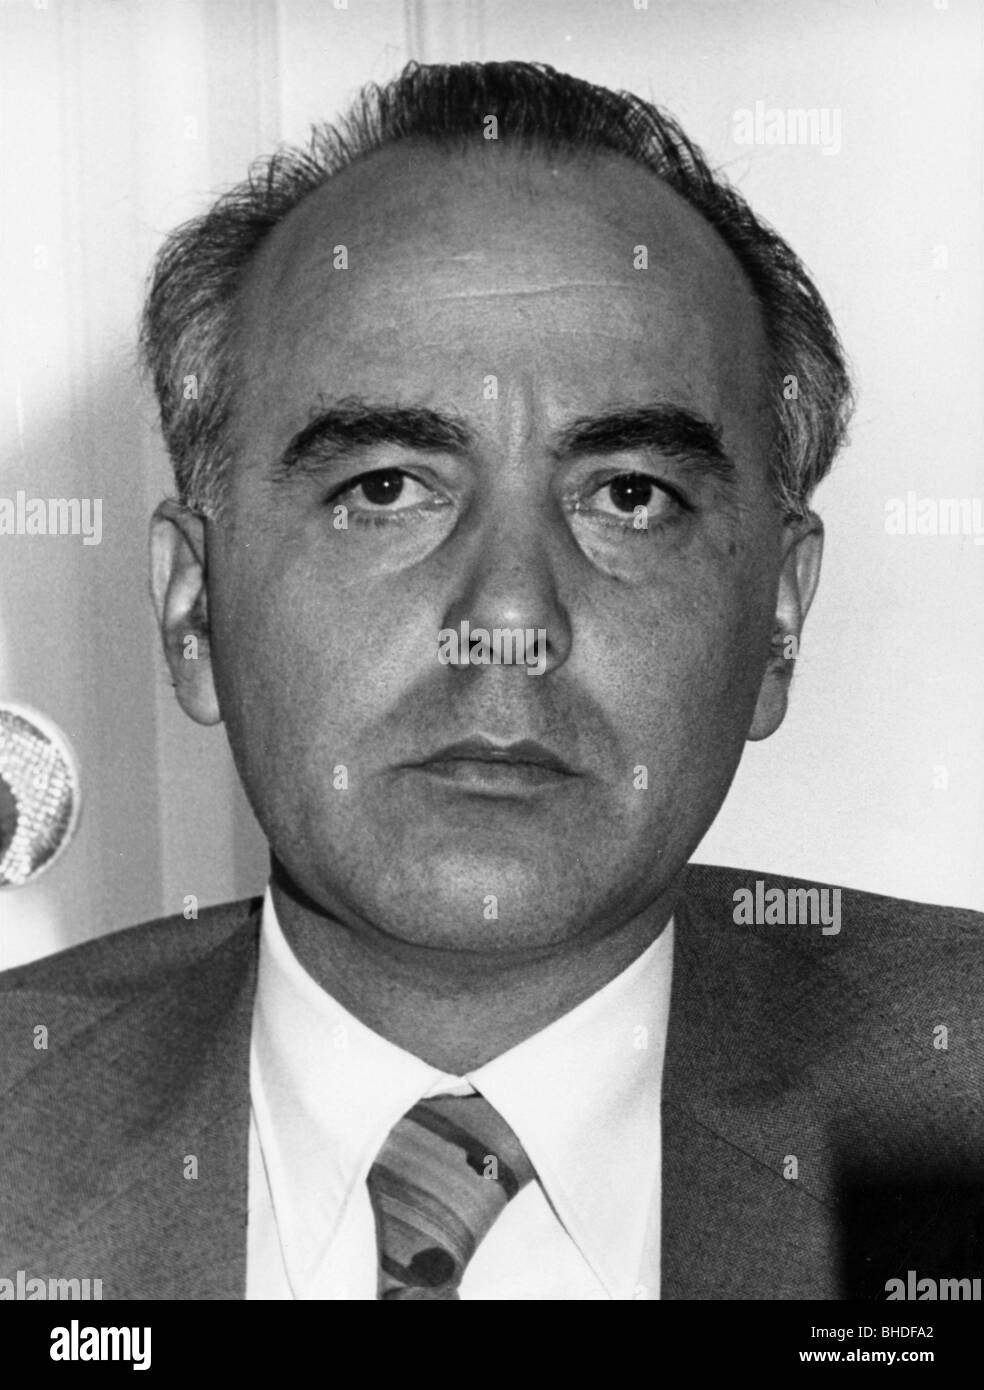 Frederichs, Hans, * 16.10.1931, politico tedesco (FDP), Ministro federale dell'economia 1972 - 1977, Portrait, 1973, Foto Stock